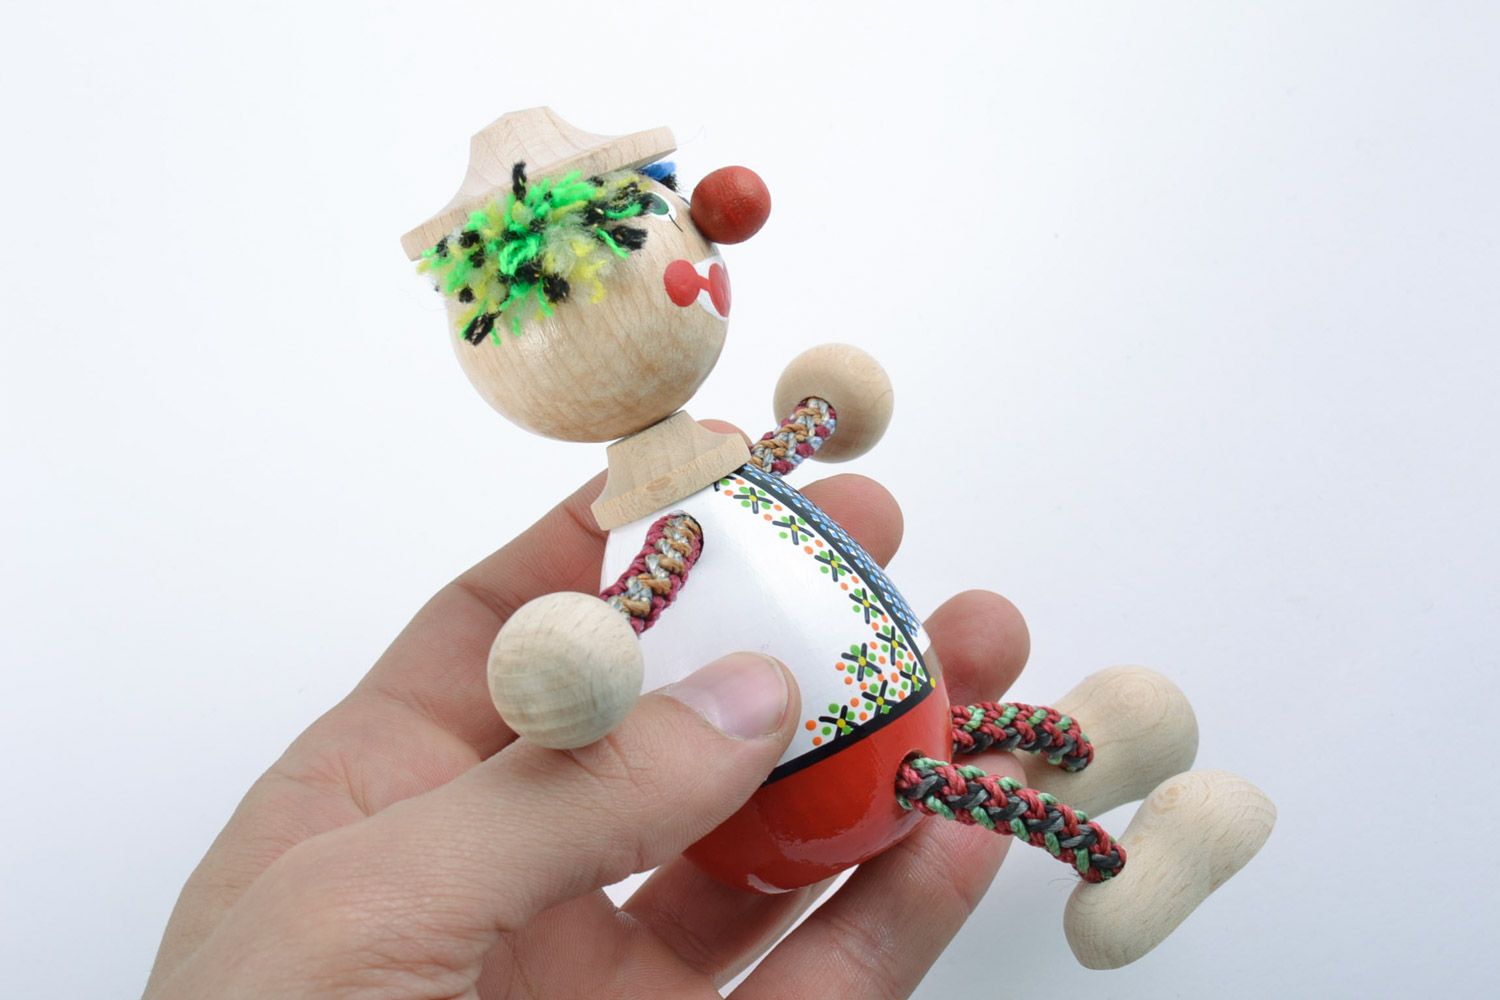 Handmade Öko Spielzeug Clown bunt bemalt originell klein für Kinderspiele foto 2